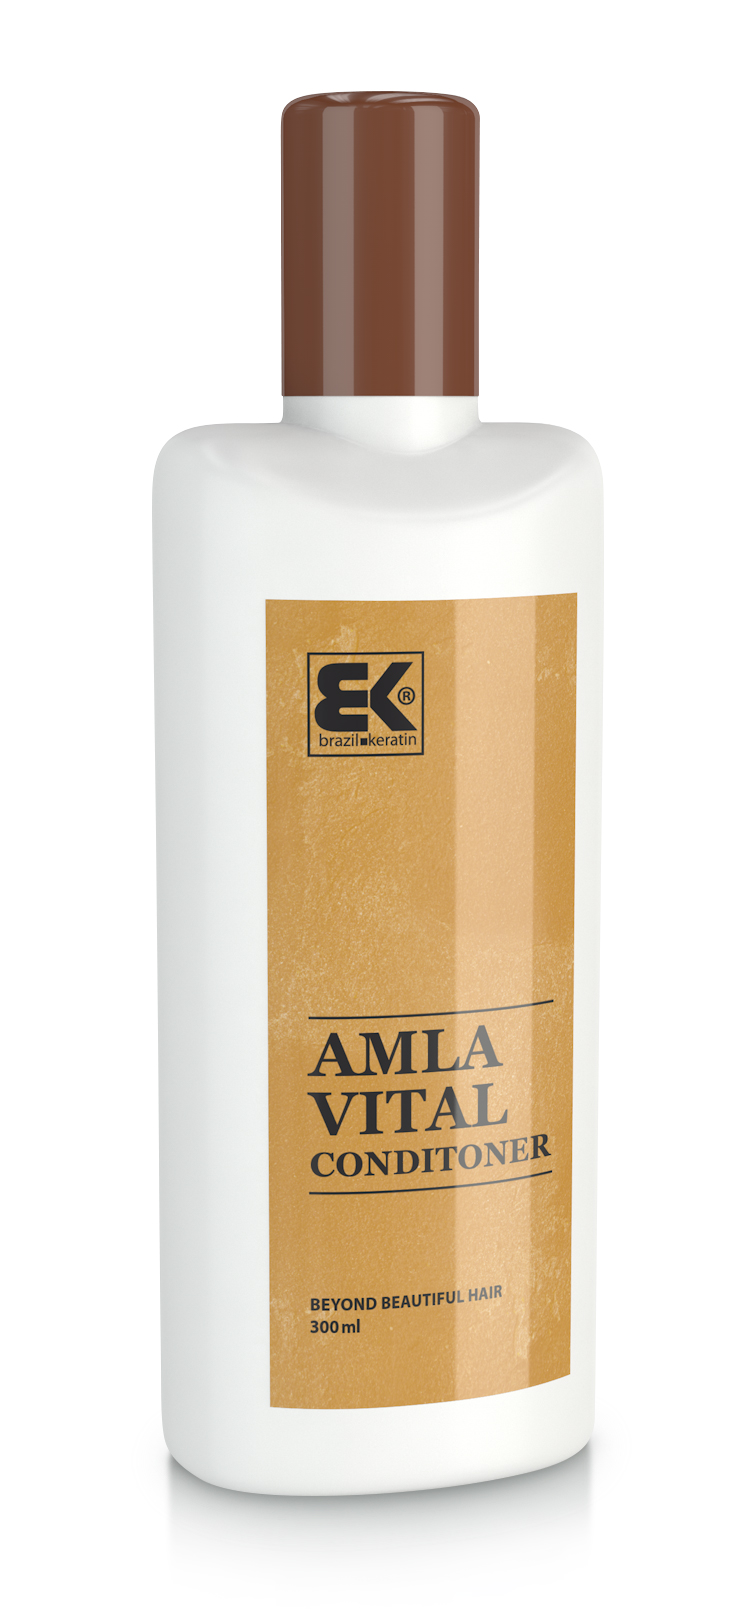 Brazil Keratin Kondicionér proti vypadávaniu vlasov Amla (Vital Conditioner) 300 ml + 2 mesiace na vrátenie tovaru